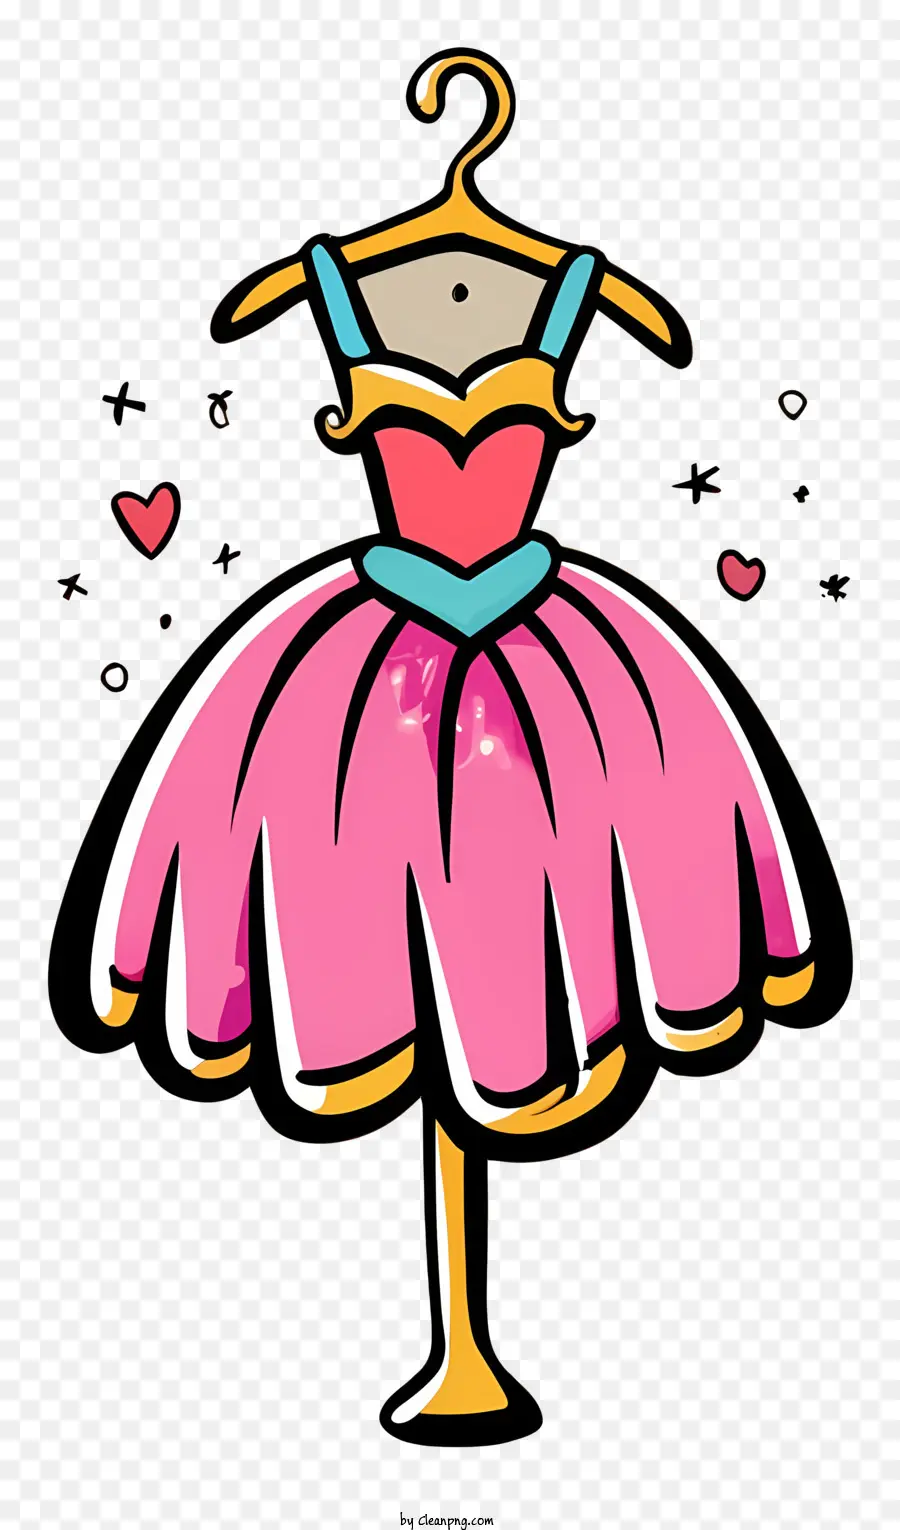 pink dress hearts on dress ballerina style dress lace collar dress blue waistband dress